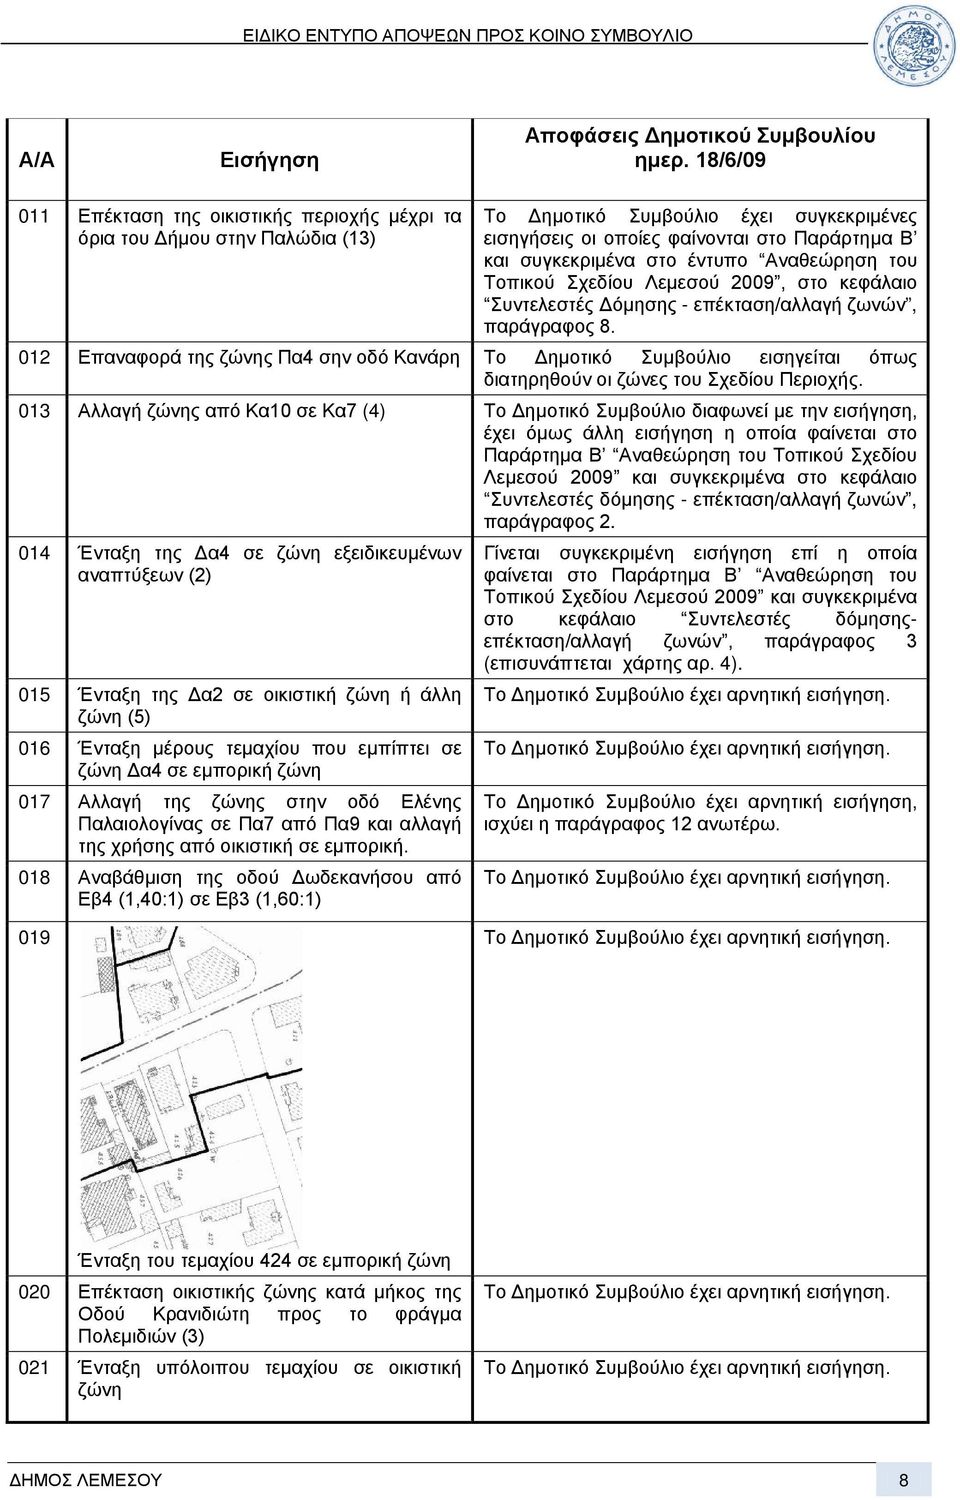 έντυπο Αναθεώρηση του Τοπικού Σχεδίου Λεμεσού 2009, στο κεφάλαιο Συντελεστές Δόμησης - επέκταση/αλλαγή ζωνών, παράγραφος 8.